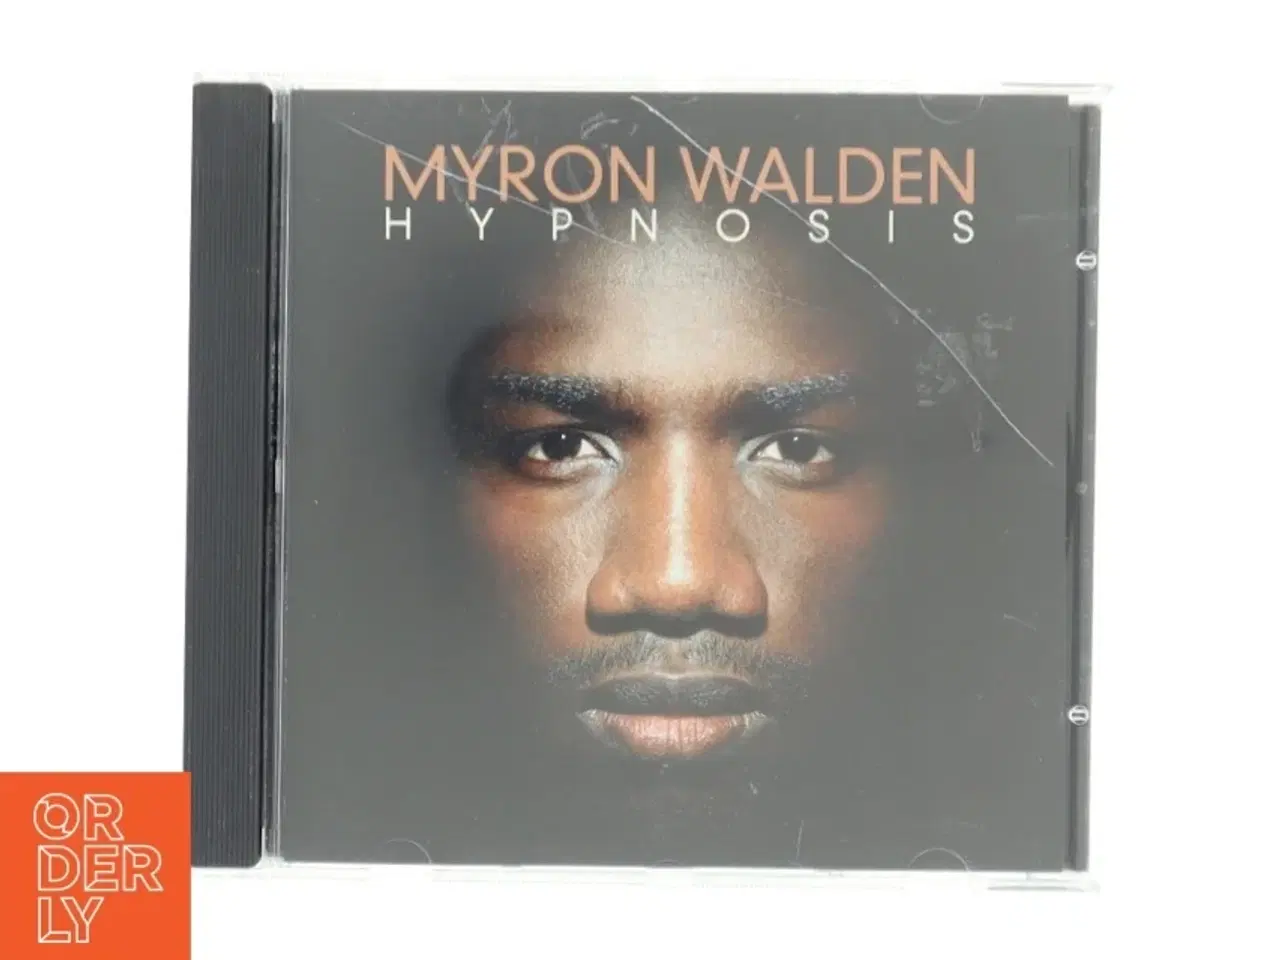 Billede 1 - Myron Walden Hypnosis CD fra NYC Records